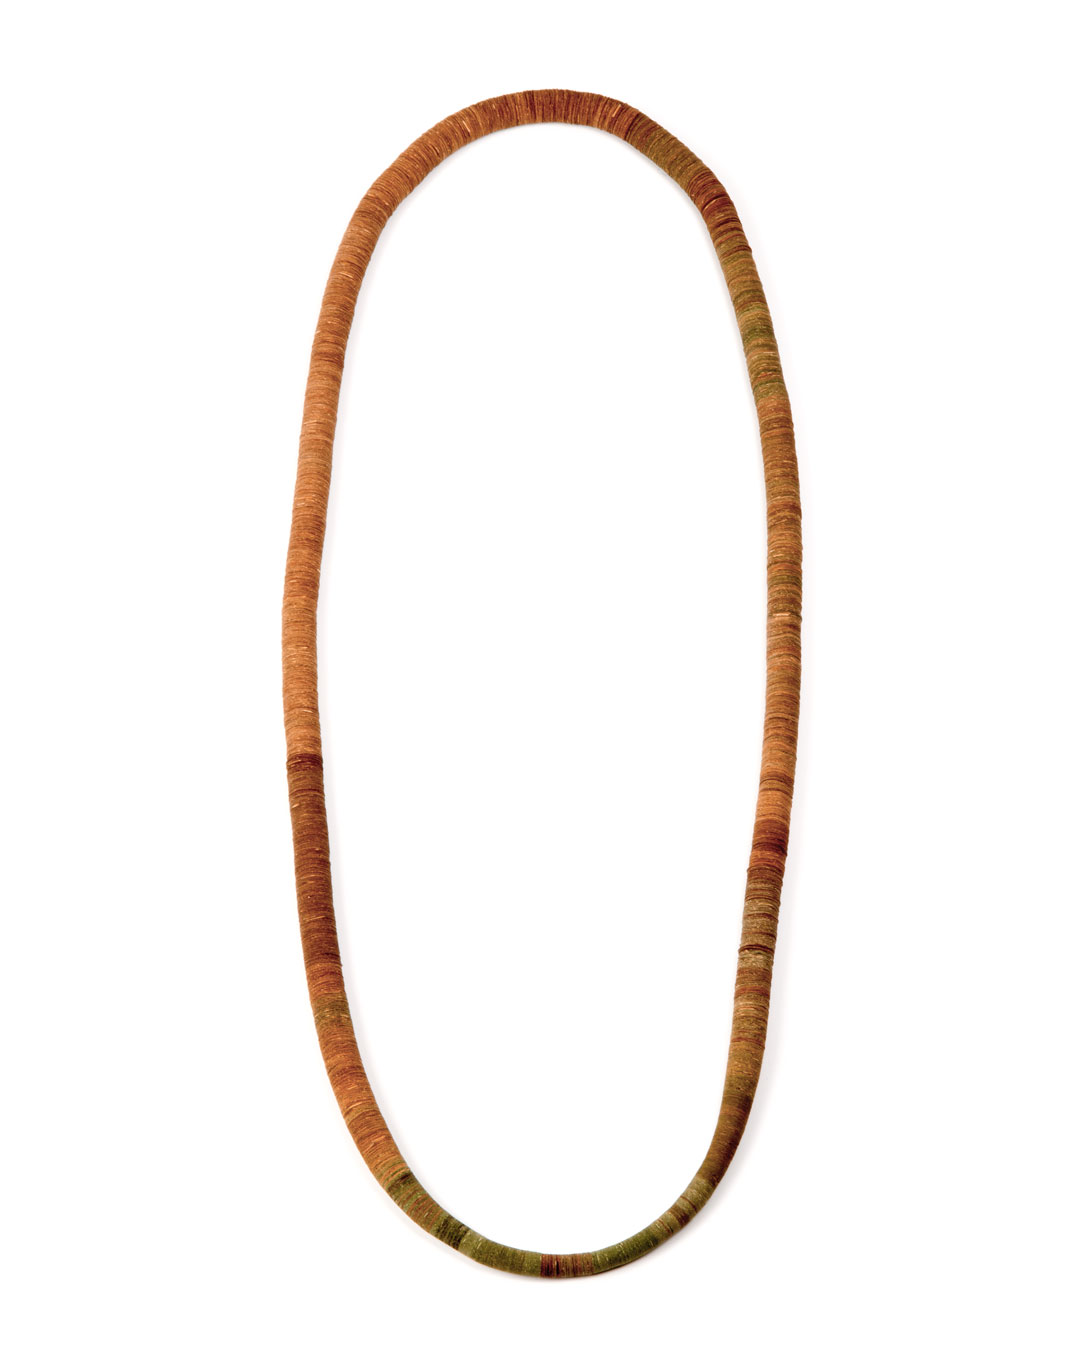 Carmen Hauser, Eiche (Oak), 2020, necklace; oak leaves, yarn, 620 x 140 x 16 mm, €1800